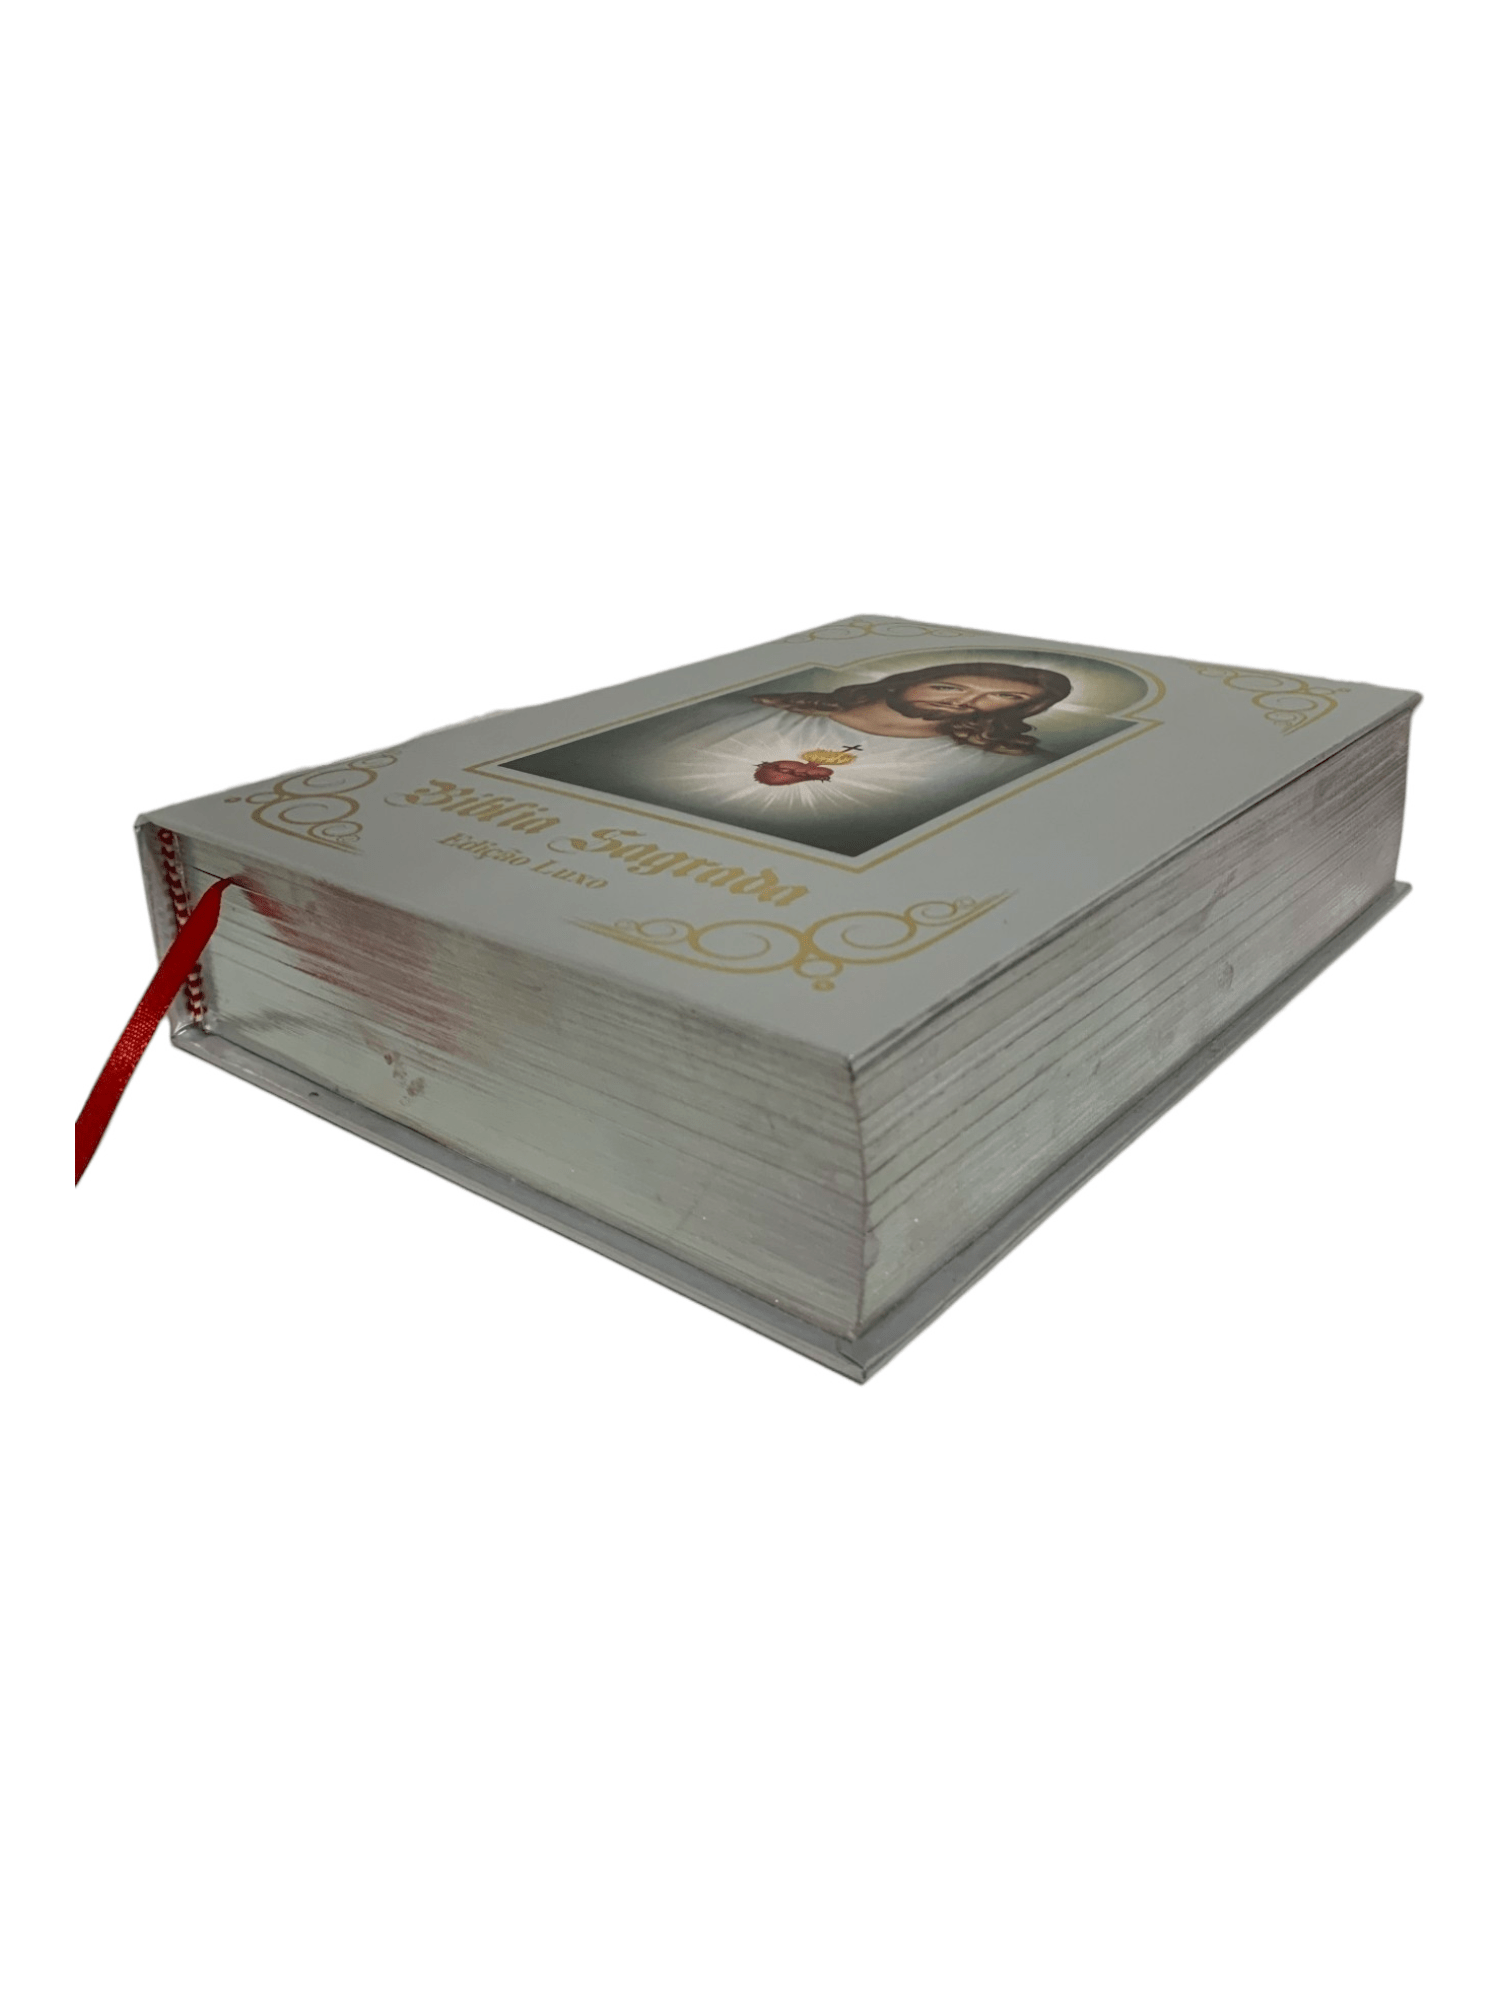 Bíblia Sagrada Ilustrada Edição de Luxo Prateada-TerraCotta Arte Sacra